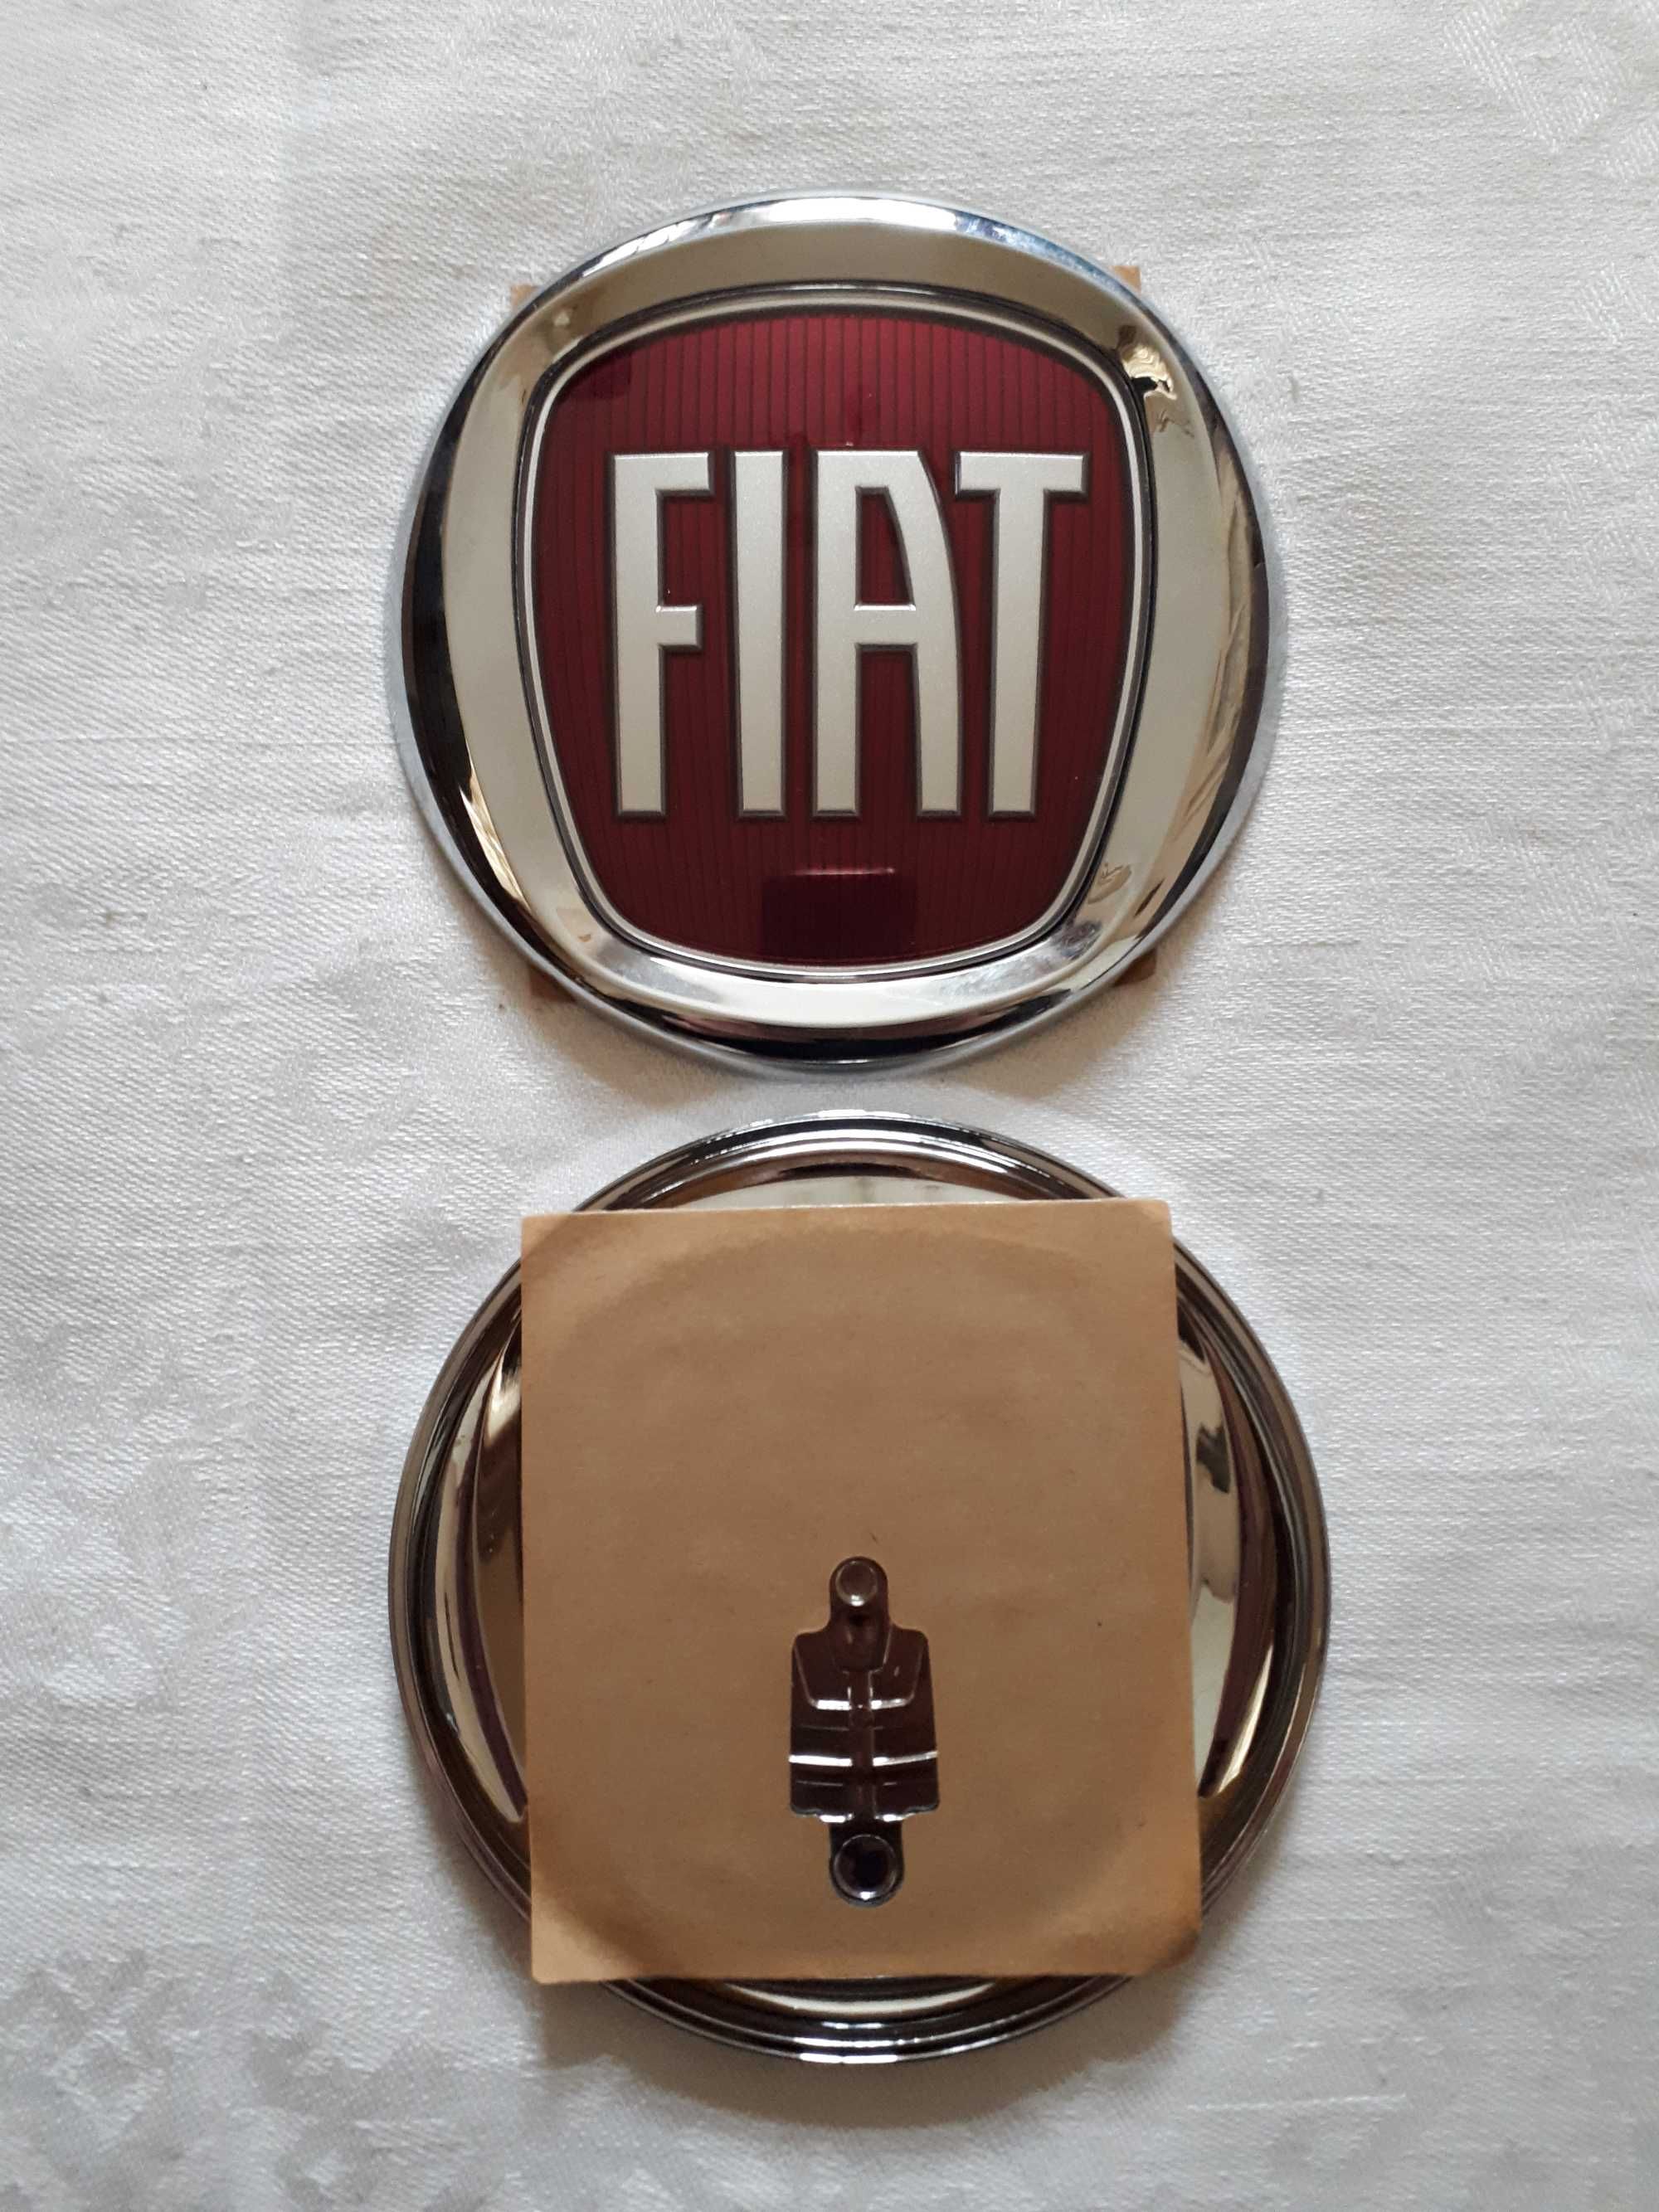 Эмблема  значок  шильдик  надпись  логотип  FIAT  Оригинал